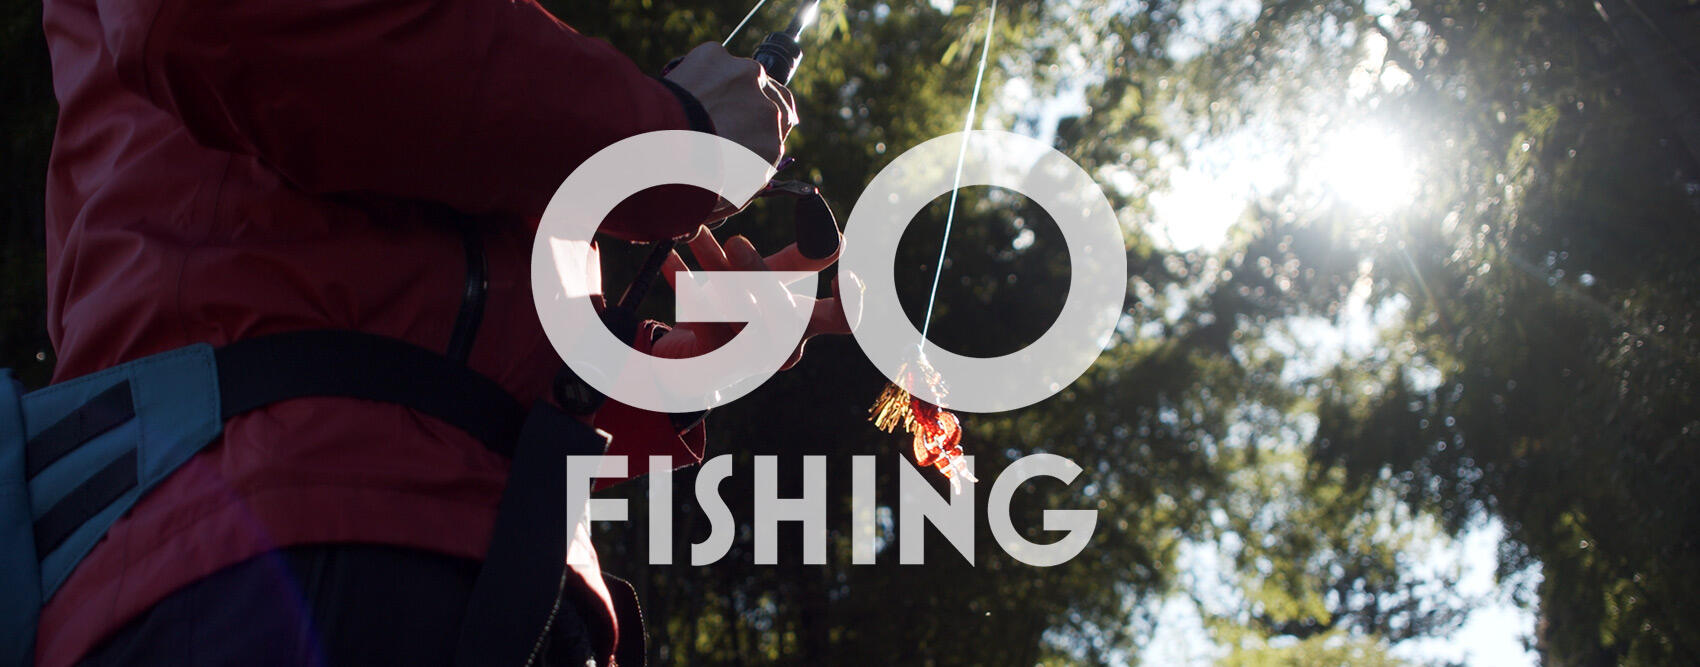 go_fishing_Ber